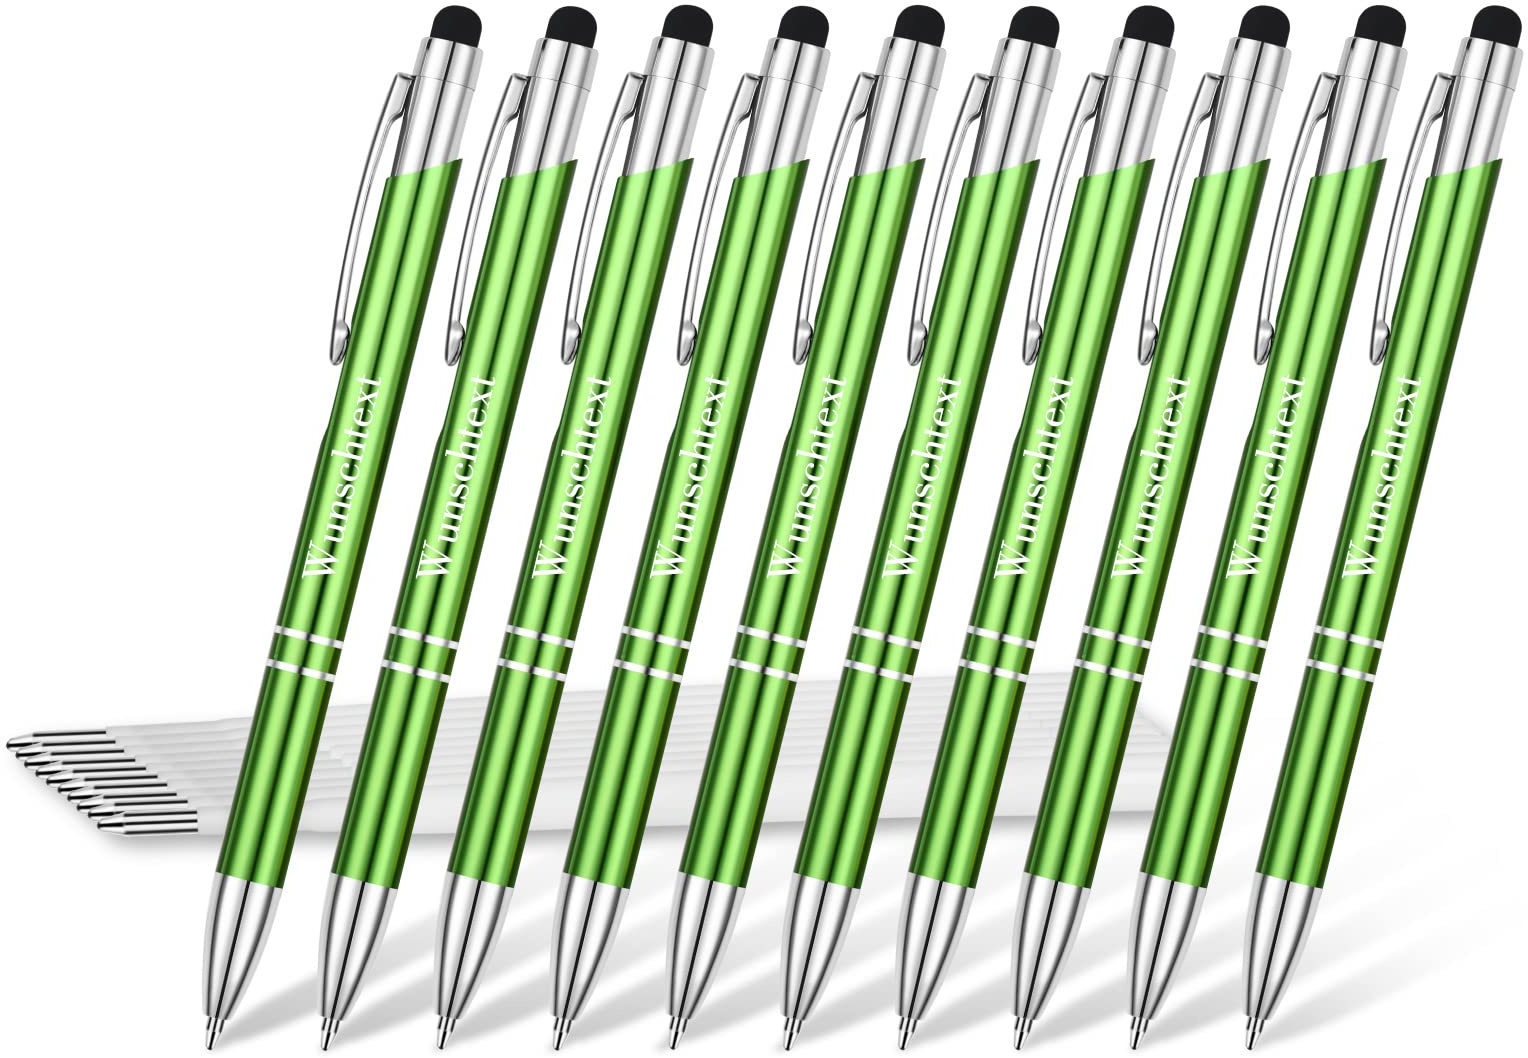 Eingabestift Kugelschreiber mit Gravur, OXYEFEI 2 in 1 Personalisiert Stylus Stifte mit Wunschtext Hochempfindlich für Touch Screens Gerte Smartphones (Green)